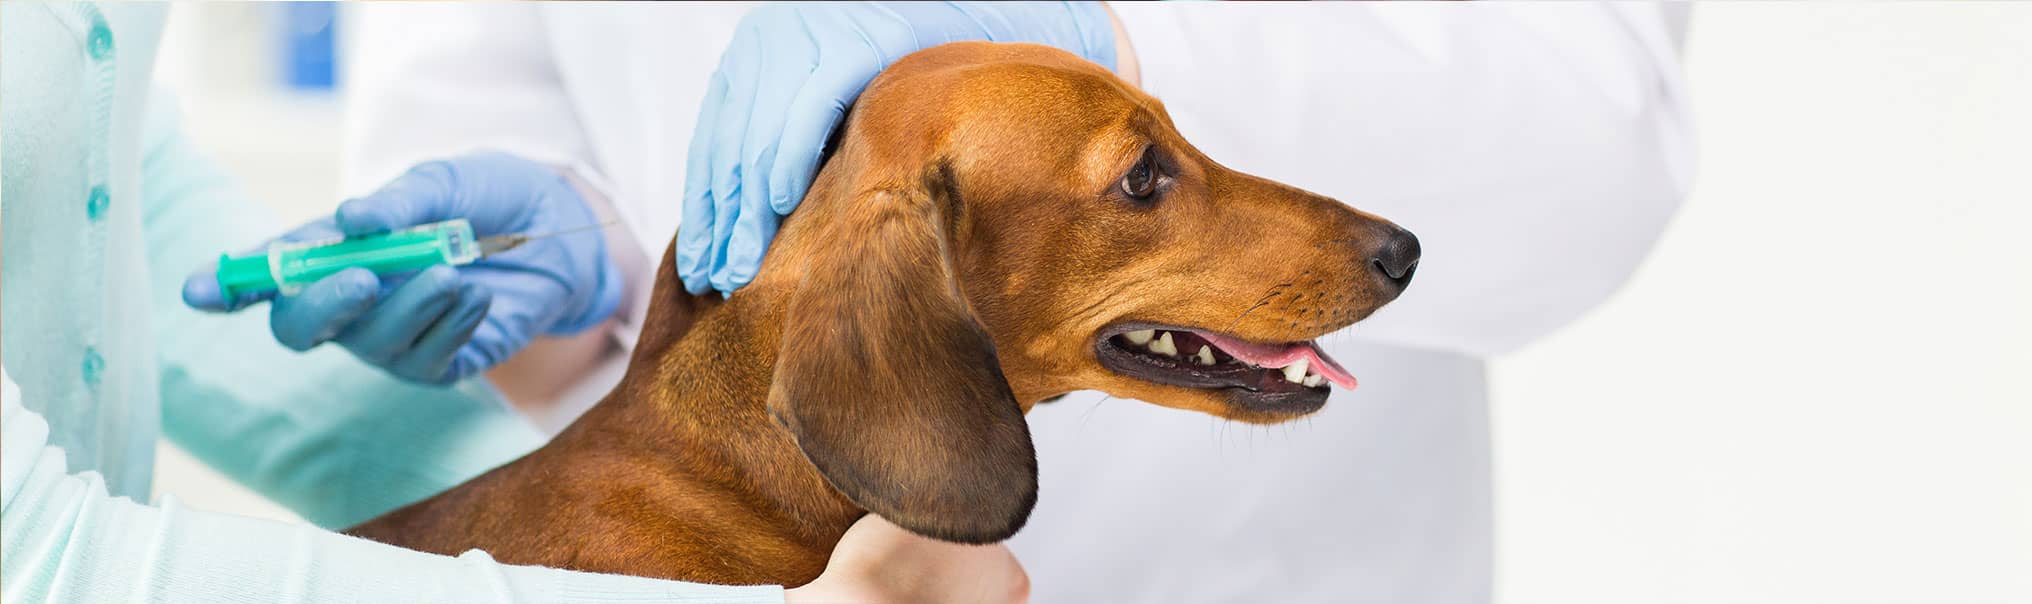 Сделать вакцину от бешенства. Вакцинация собак. Прививка собаке. Вакцинация против бешенства собак. Укол от бешенства собаке.